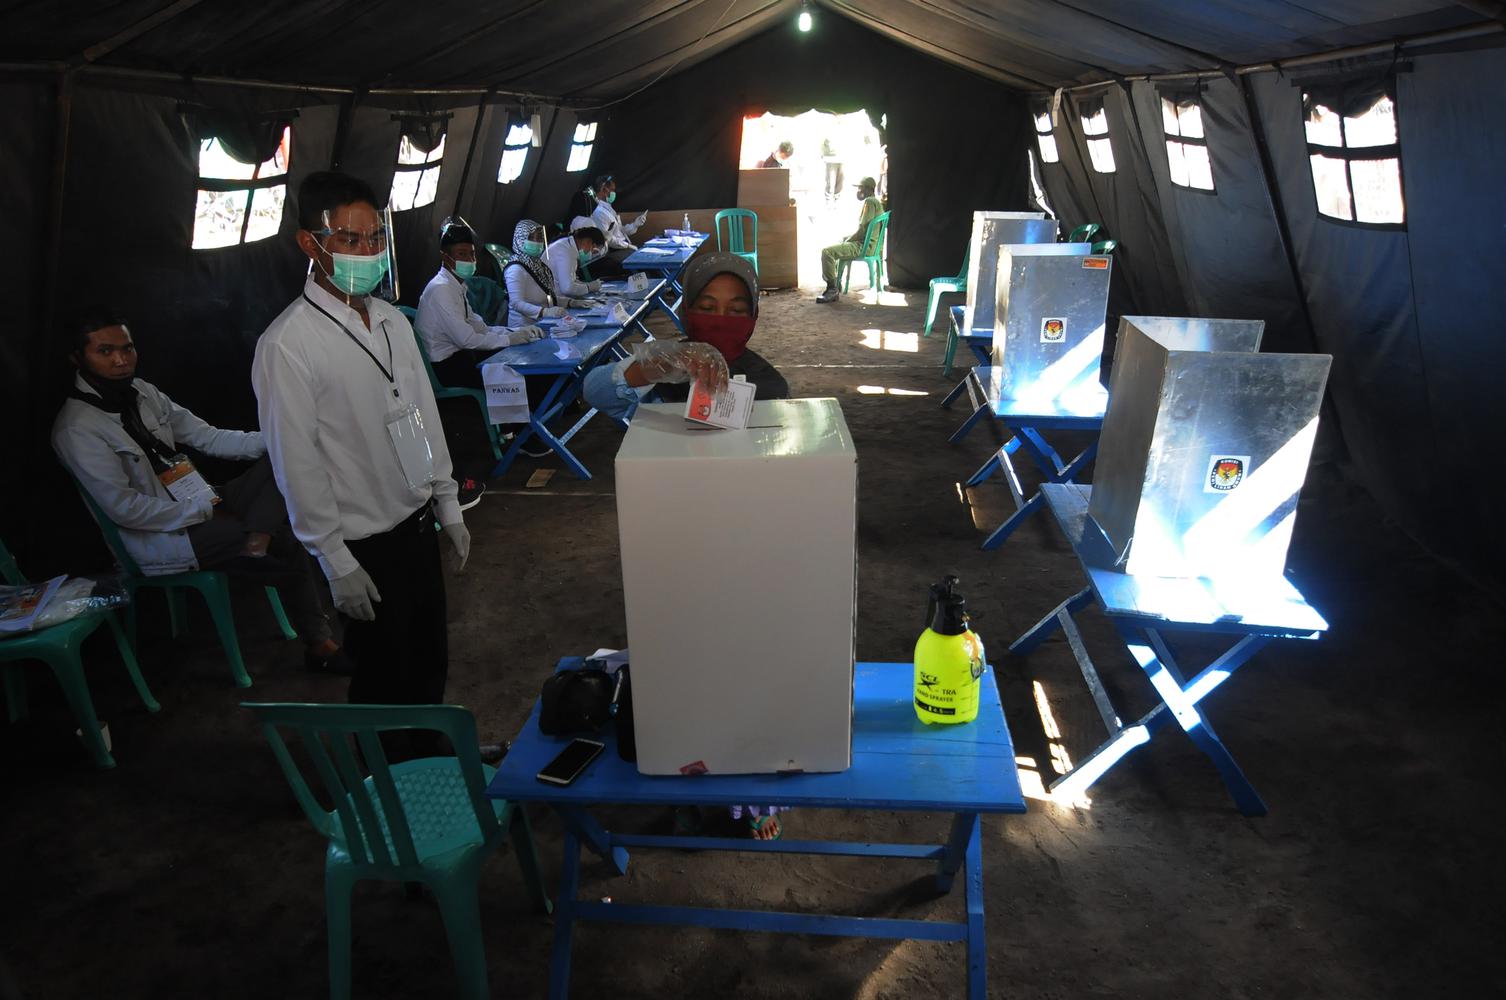 Seorang warga menggunakan hak pilihnya pada Pilkada Kabupaten Boyolali 2020 di tempat pengungsian sementara Gunung Merapi, Tlogolele, Selo, Jawa Tengah, Rabu (9/12/2020).